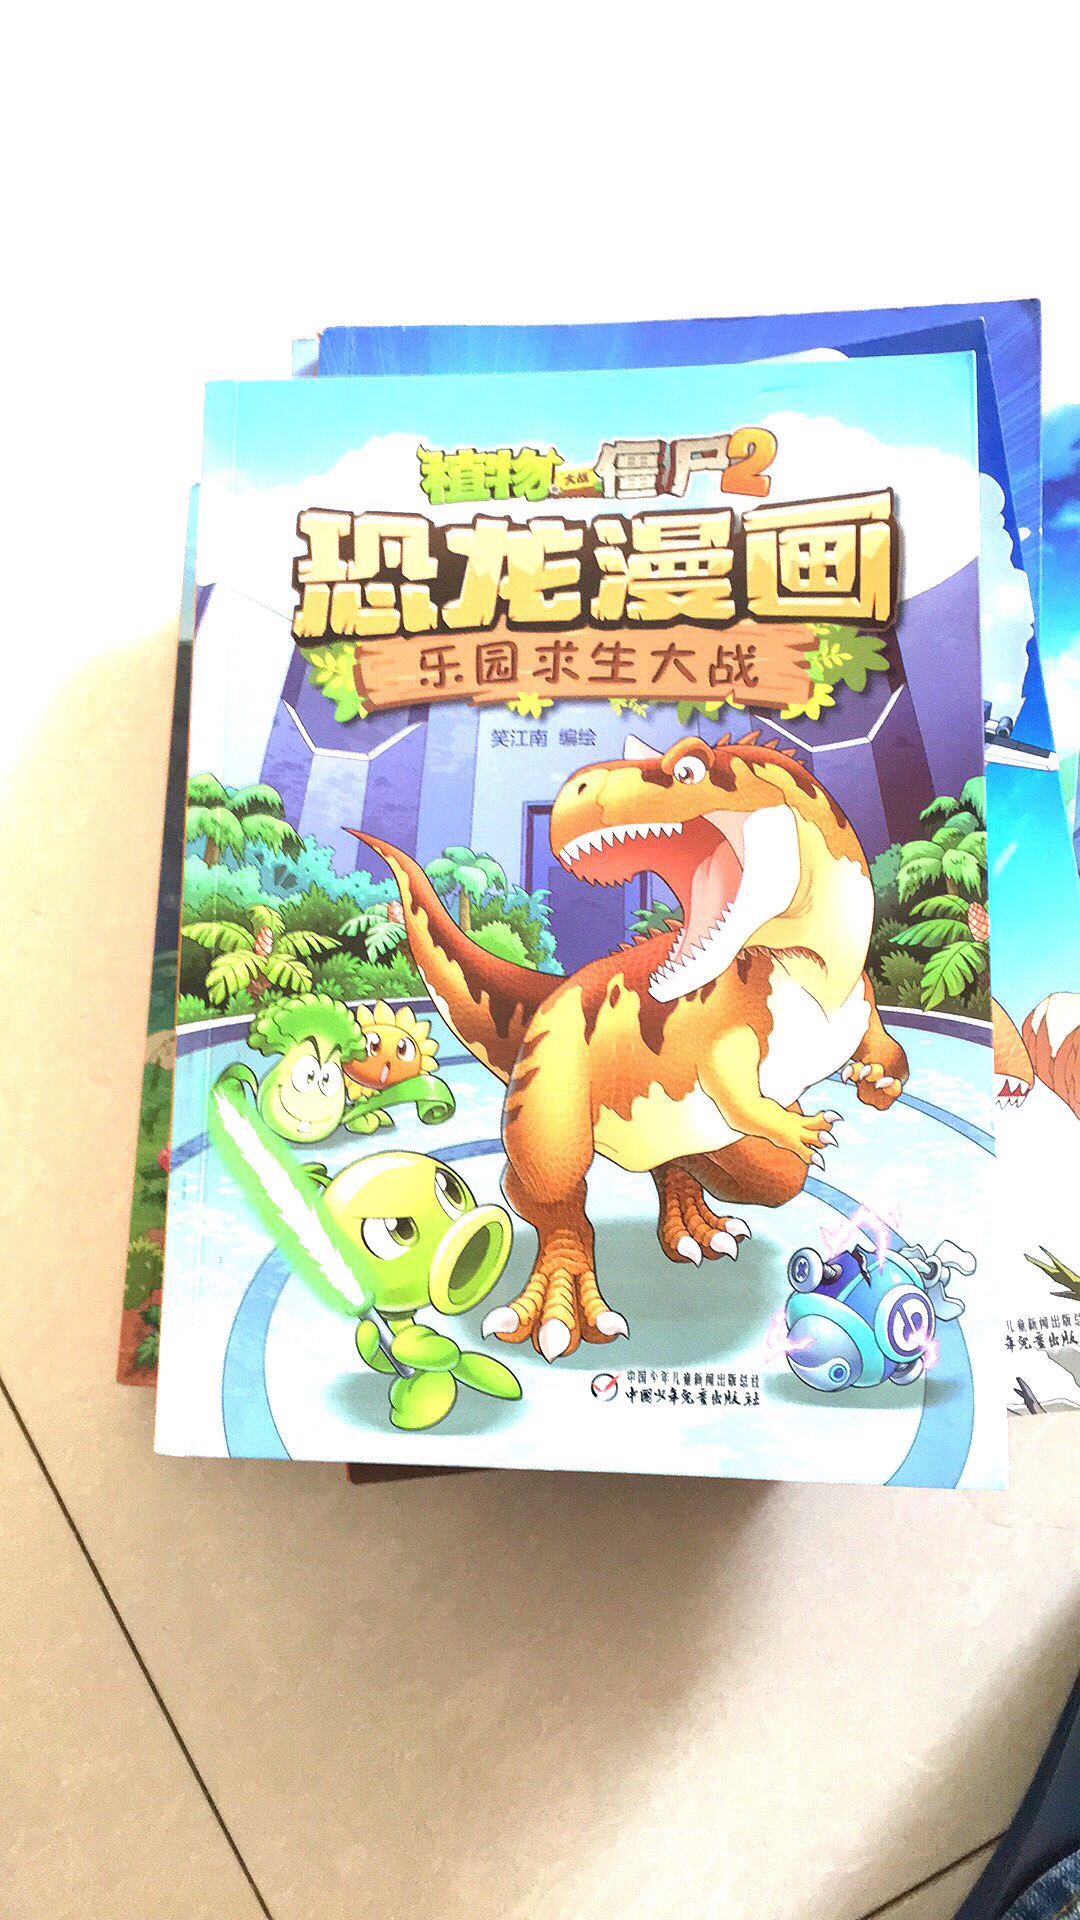 恐龙漫画了声球乐园，求生大战笑江南编绘，中国少儿童星出版社同事。